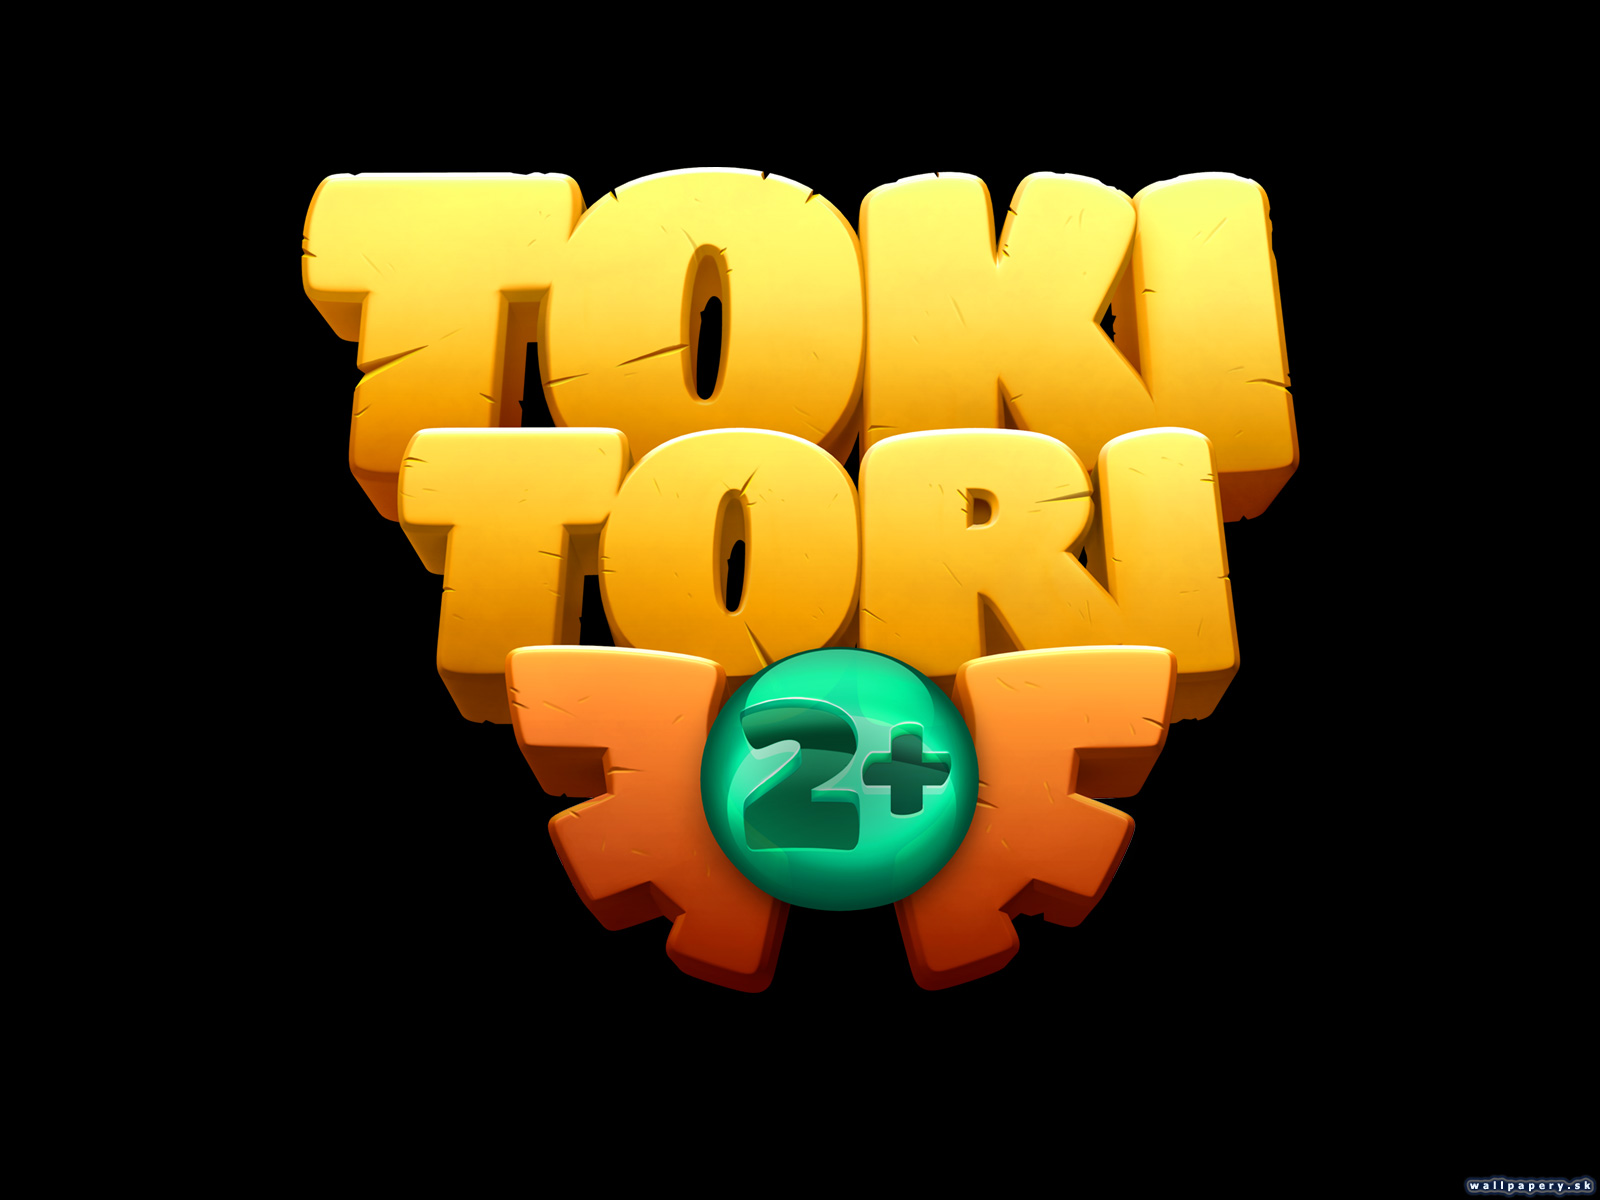 Toki Tori 2+ - wallpaper 3